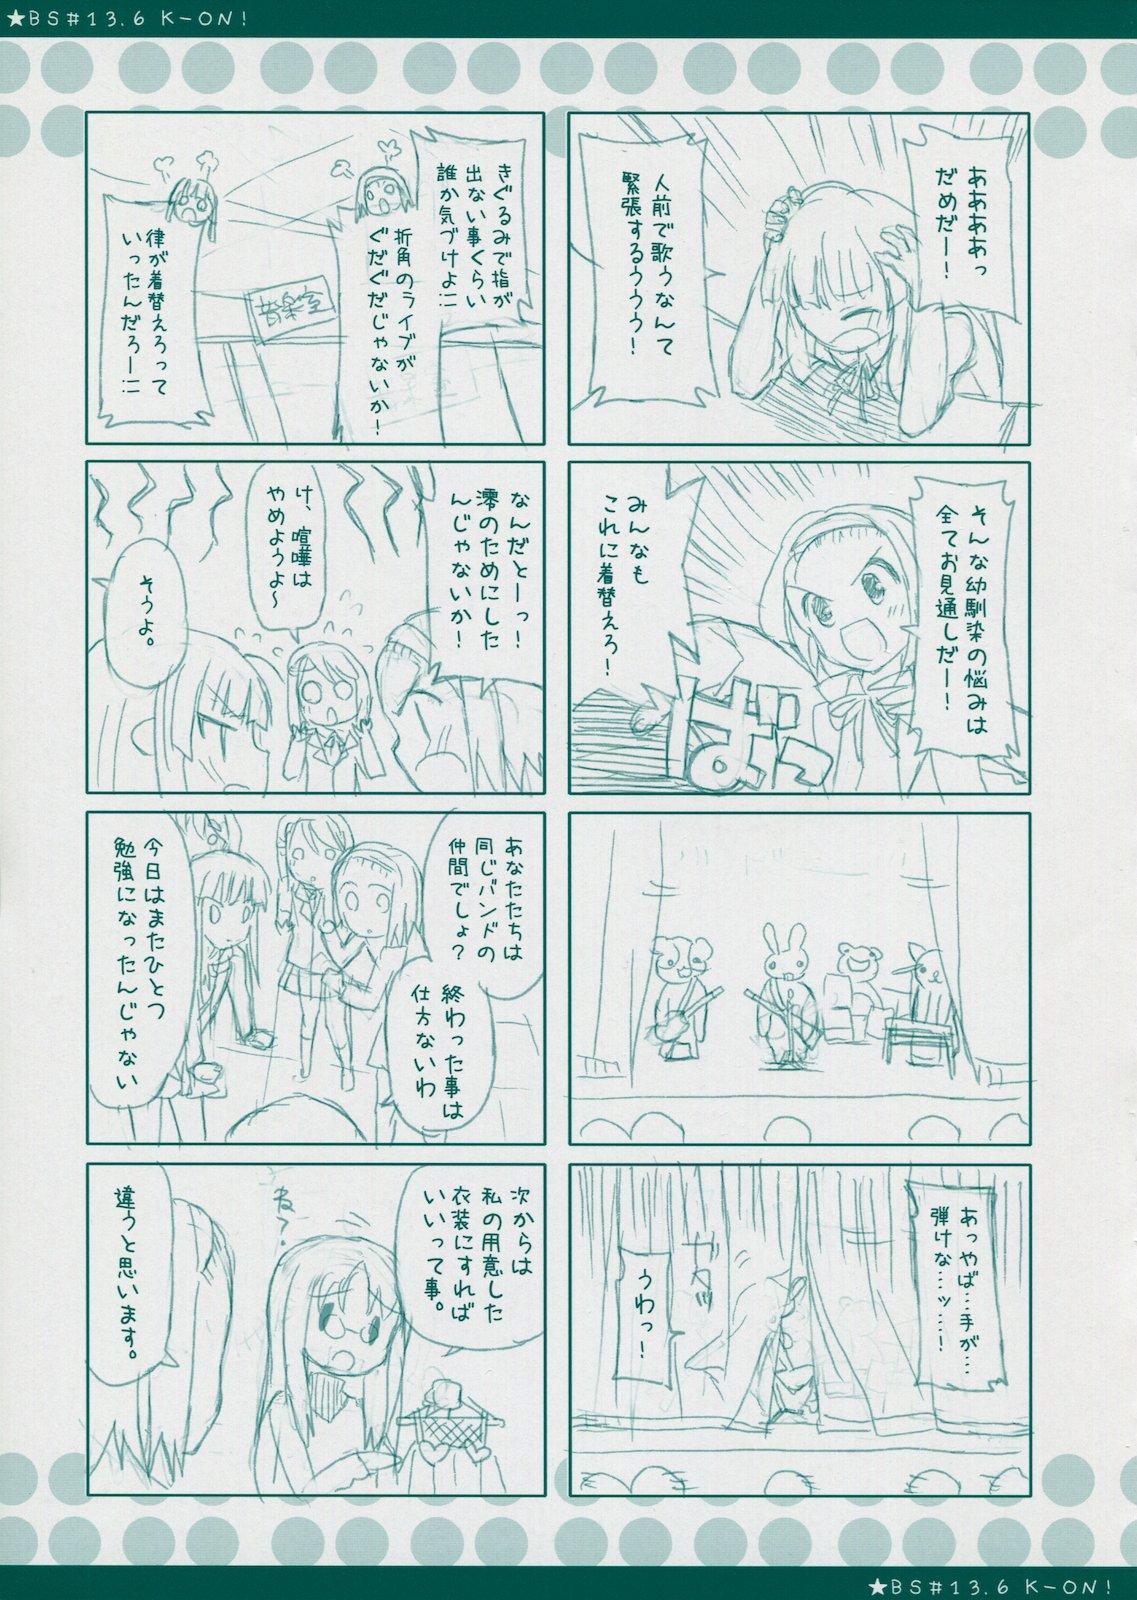 Coed BS#13.9 Keion no Rakugaki Bon 2 - K-on Panties - Page 11